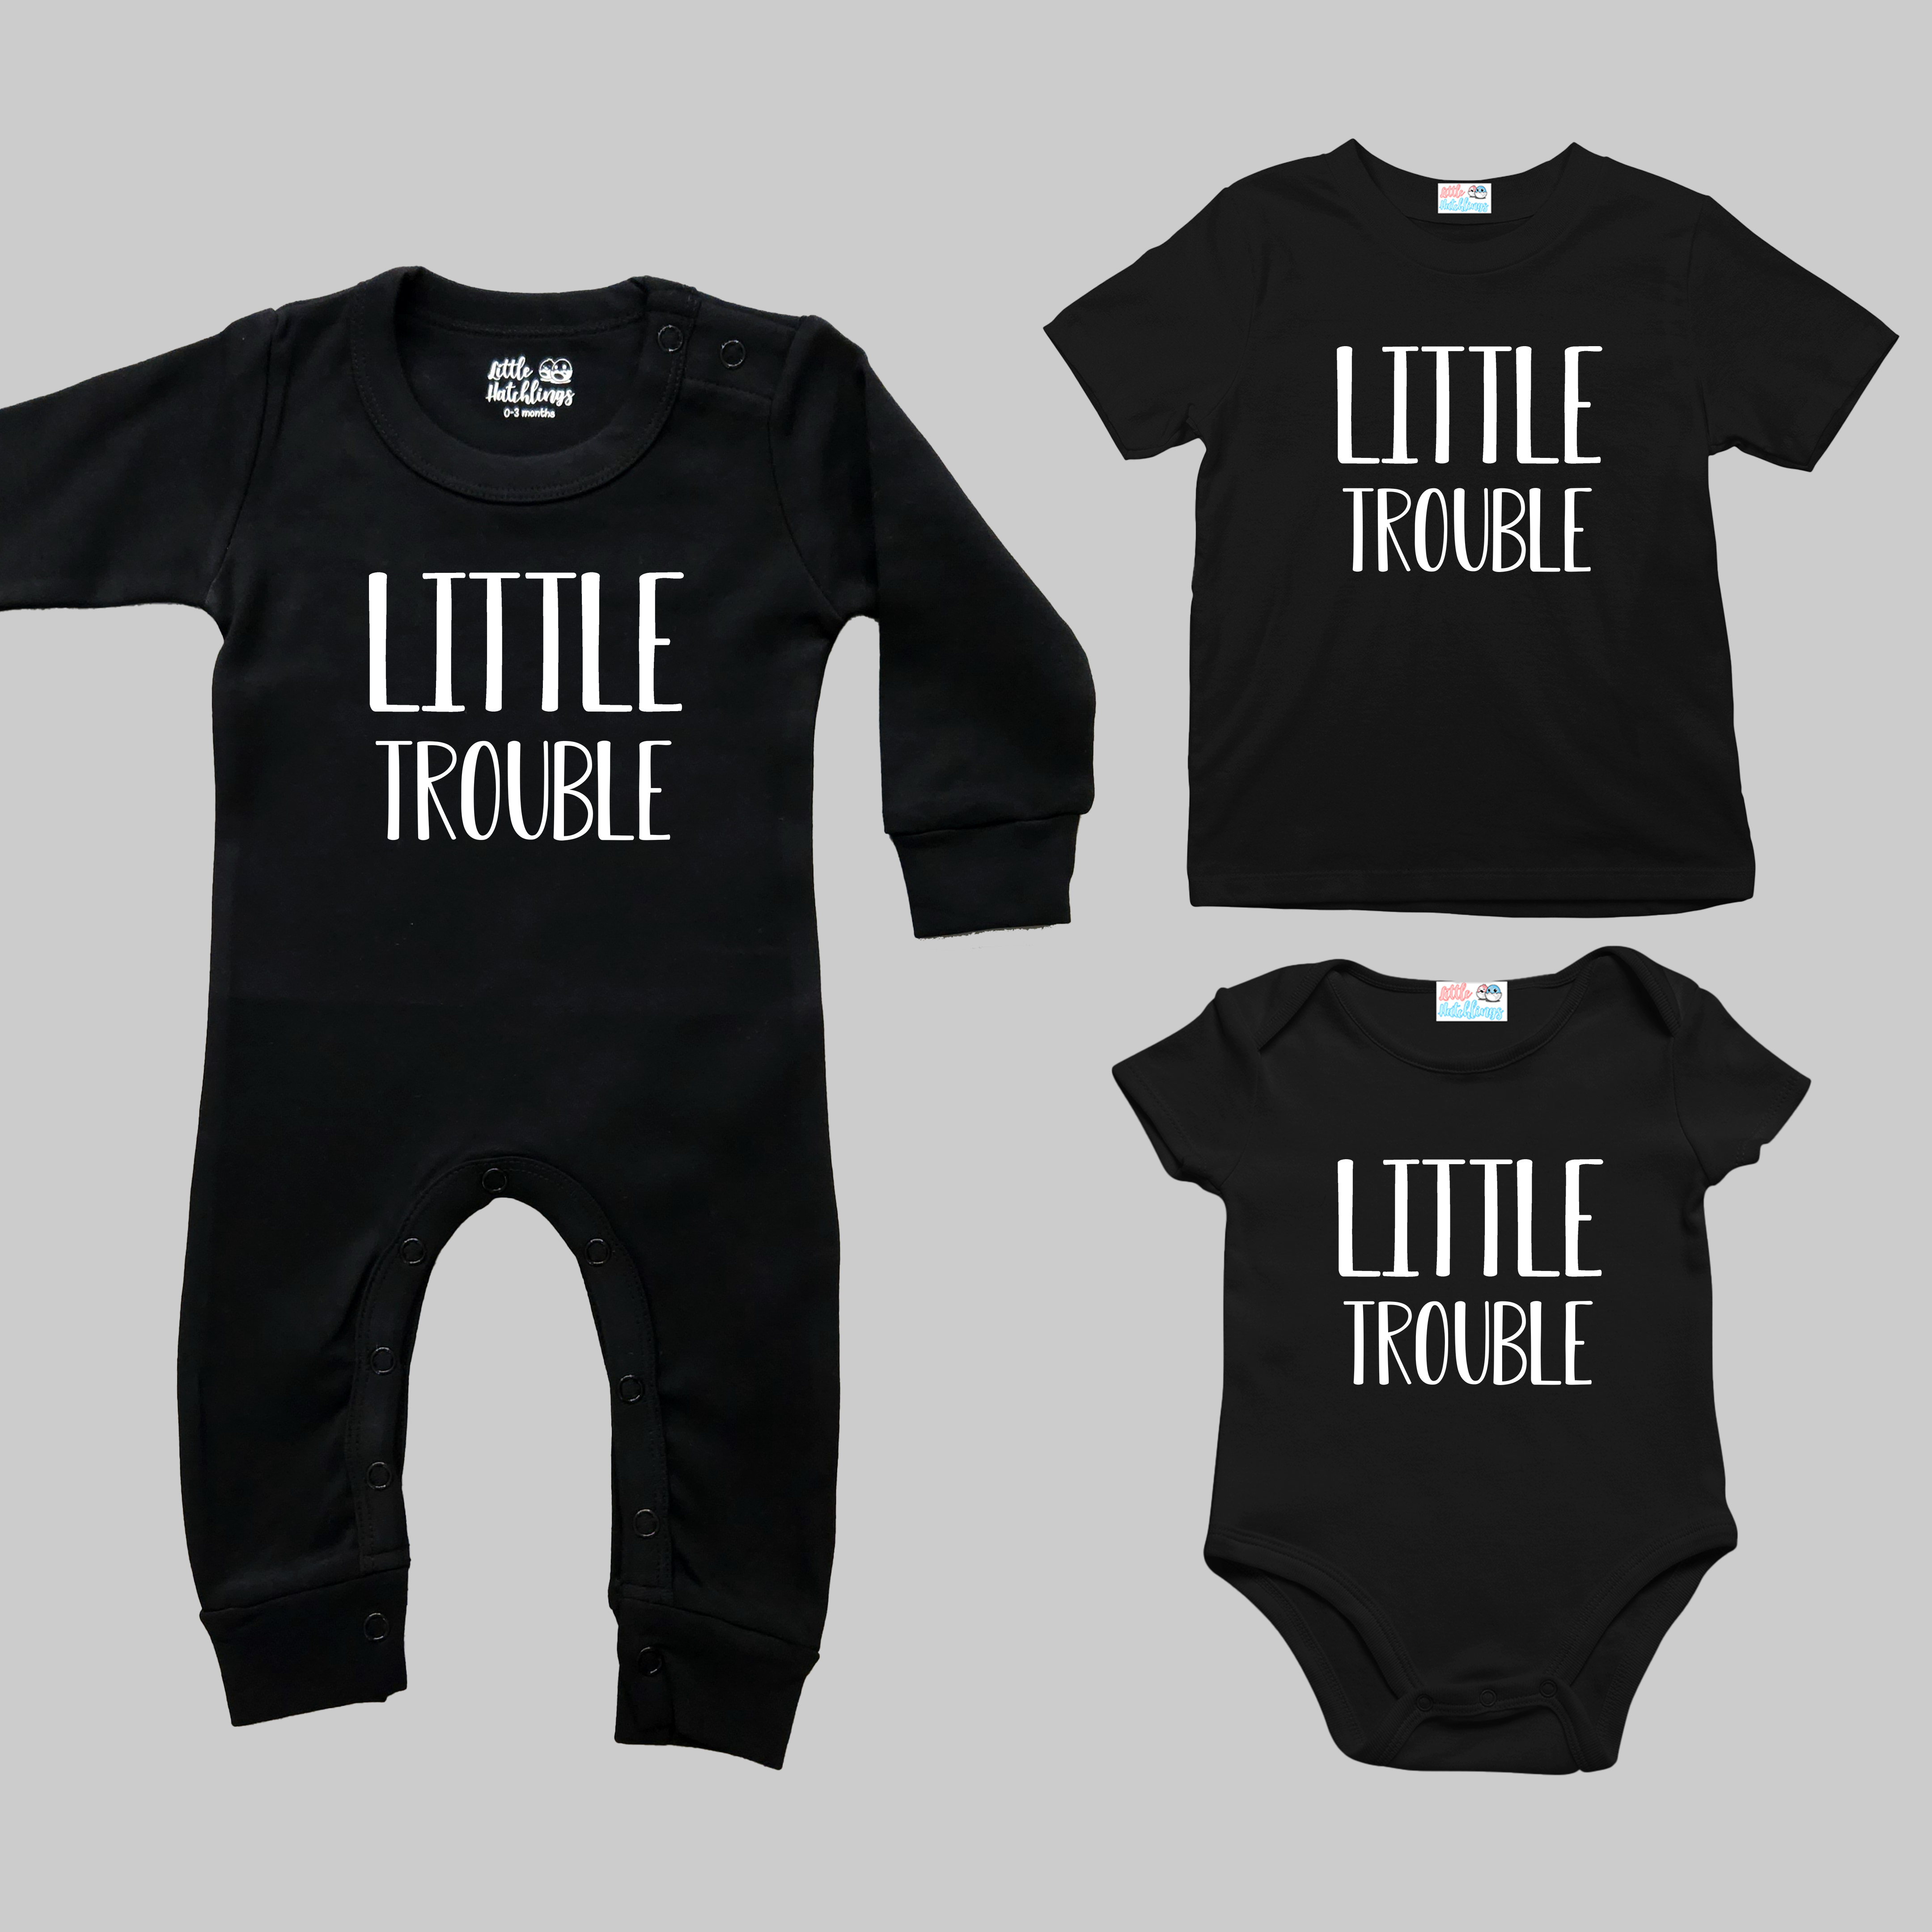 Big + Little Trouble Black and Grey Combo- Adult Tshirt + Kids Tshirt